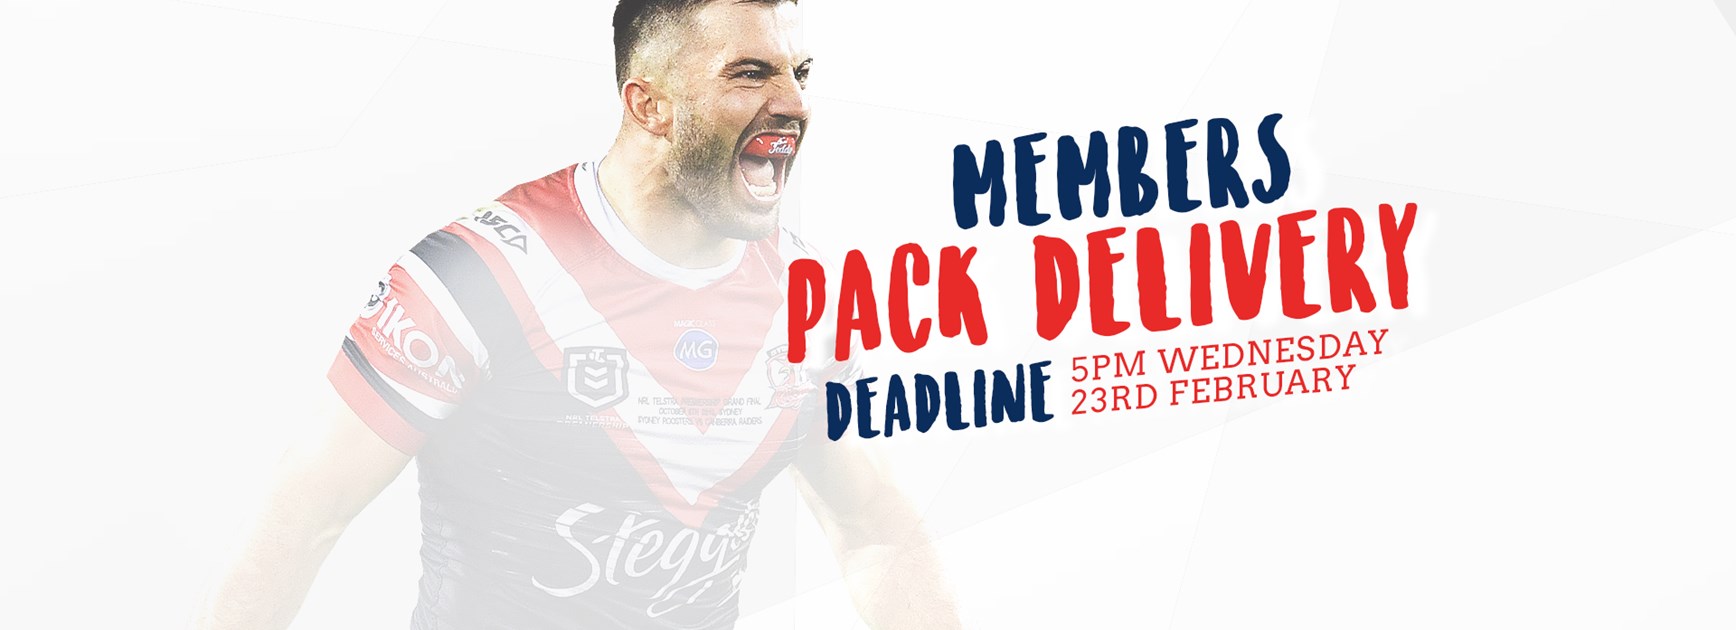 2022 Members Pack Delivery Deadline Ending Soon!